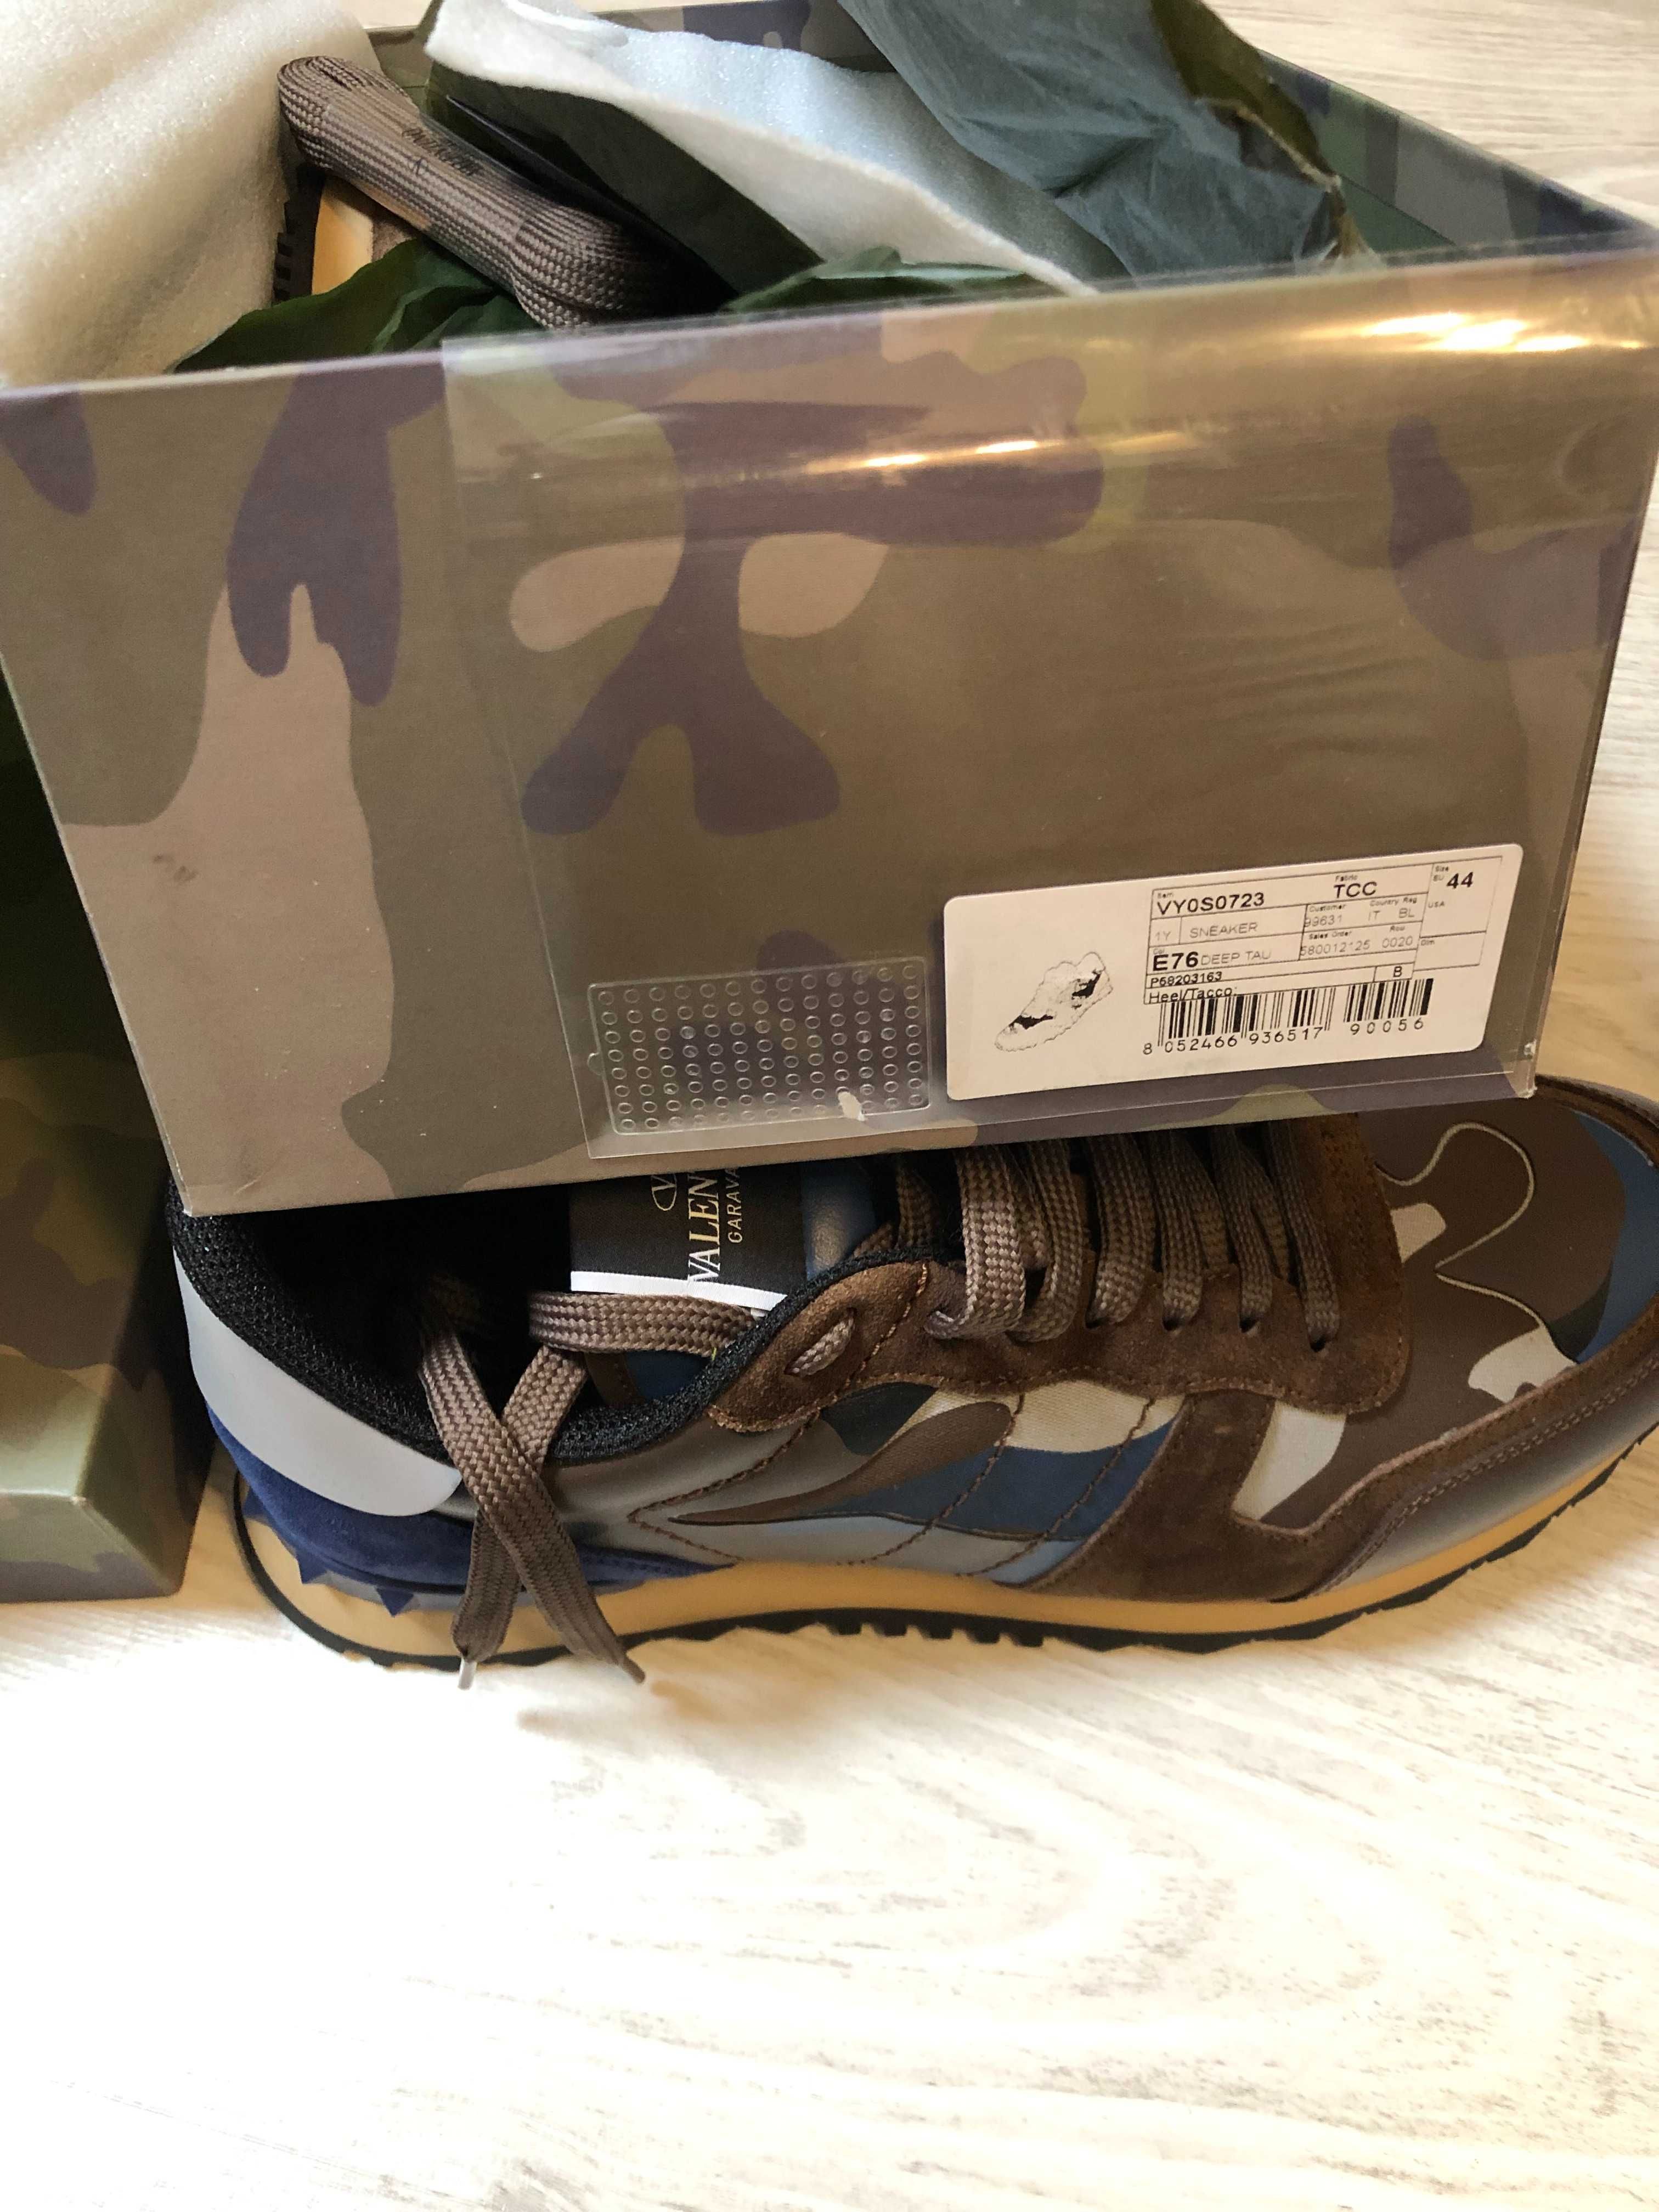 Valentino Garavani sneakers 44 autentici, full box, retail 580 euro